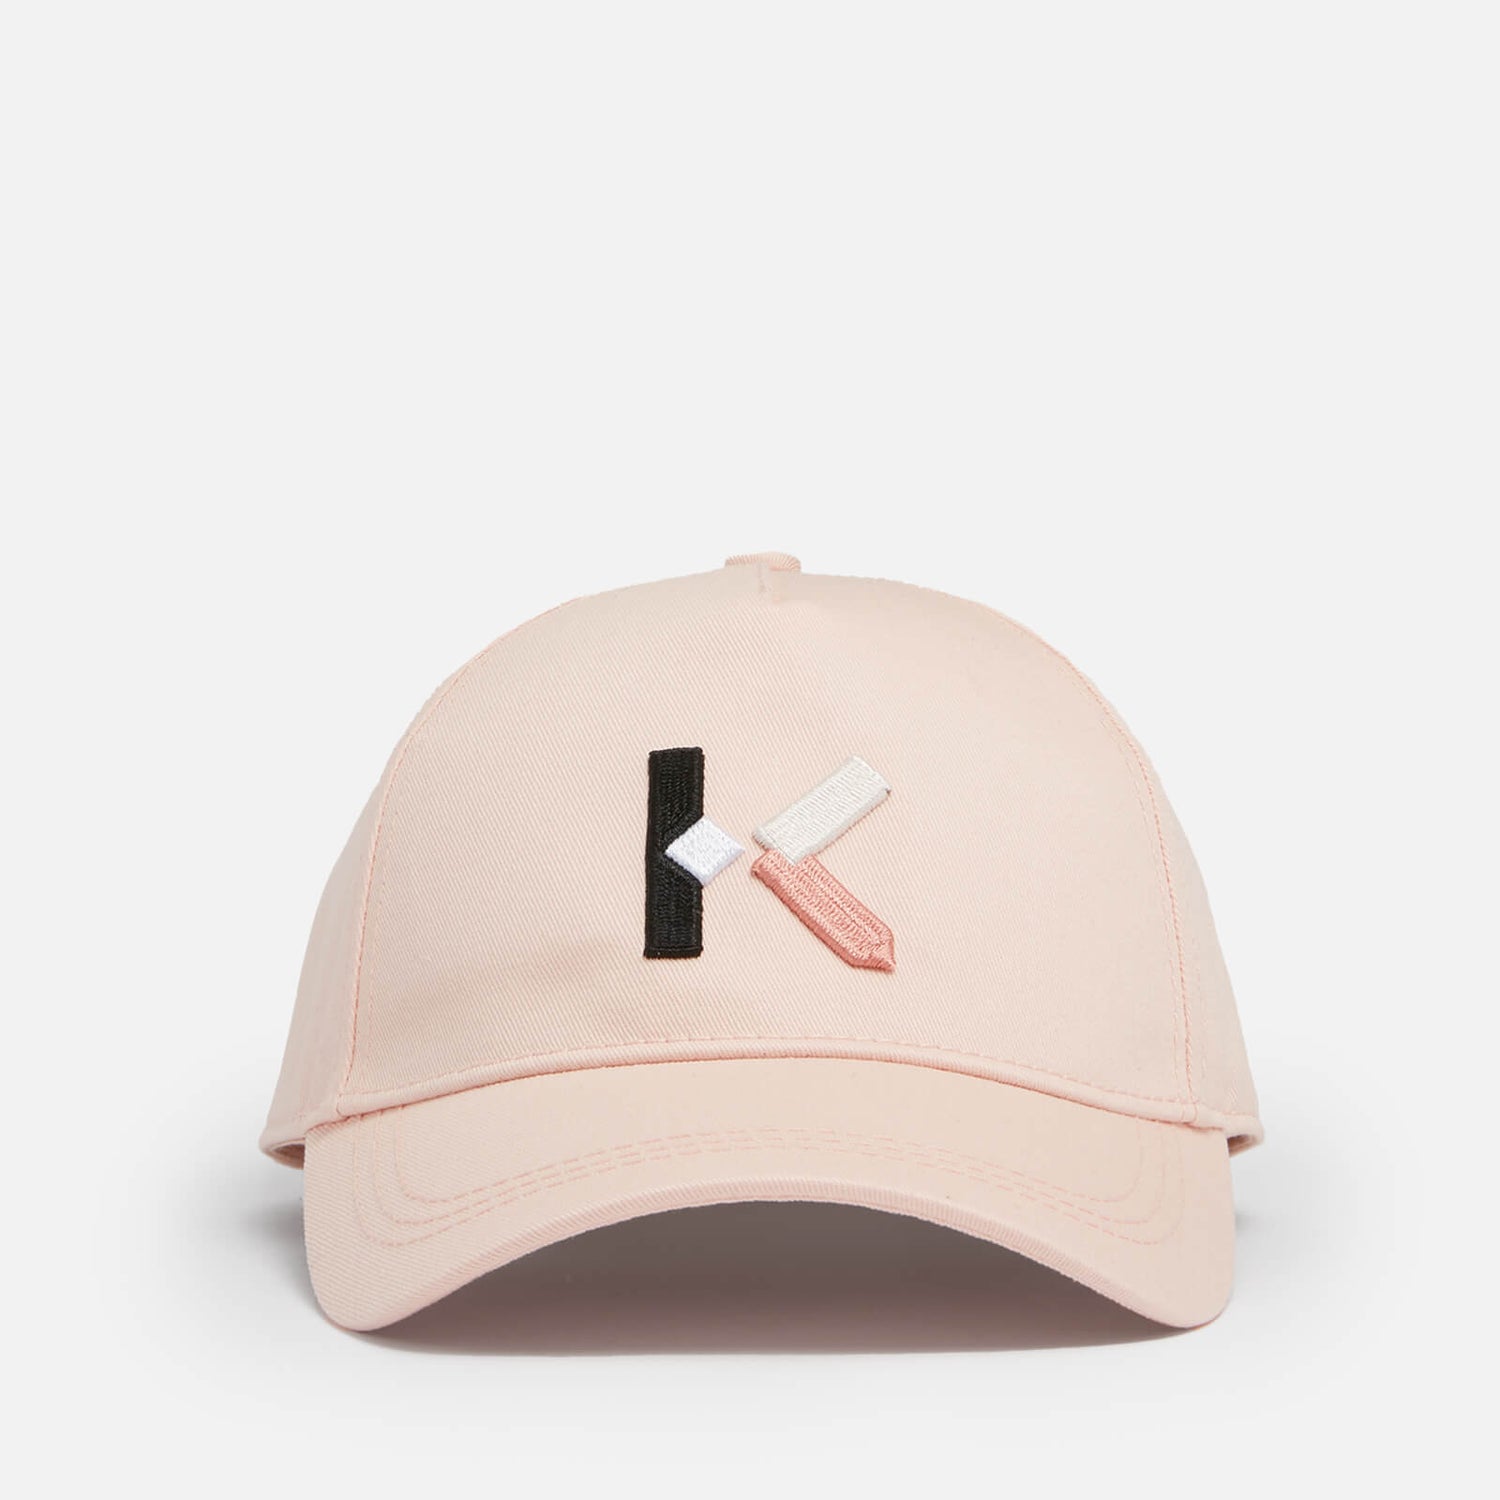 KENZO Girls' Baseball Cap - Pink